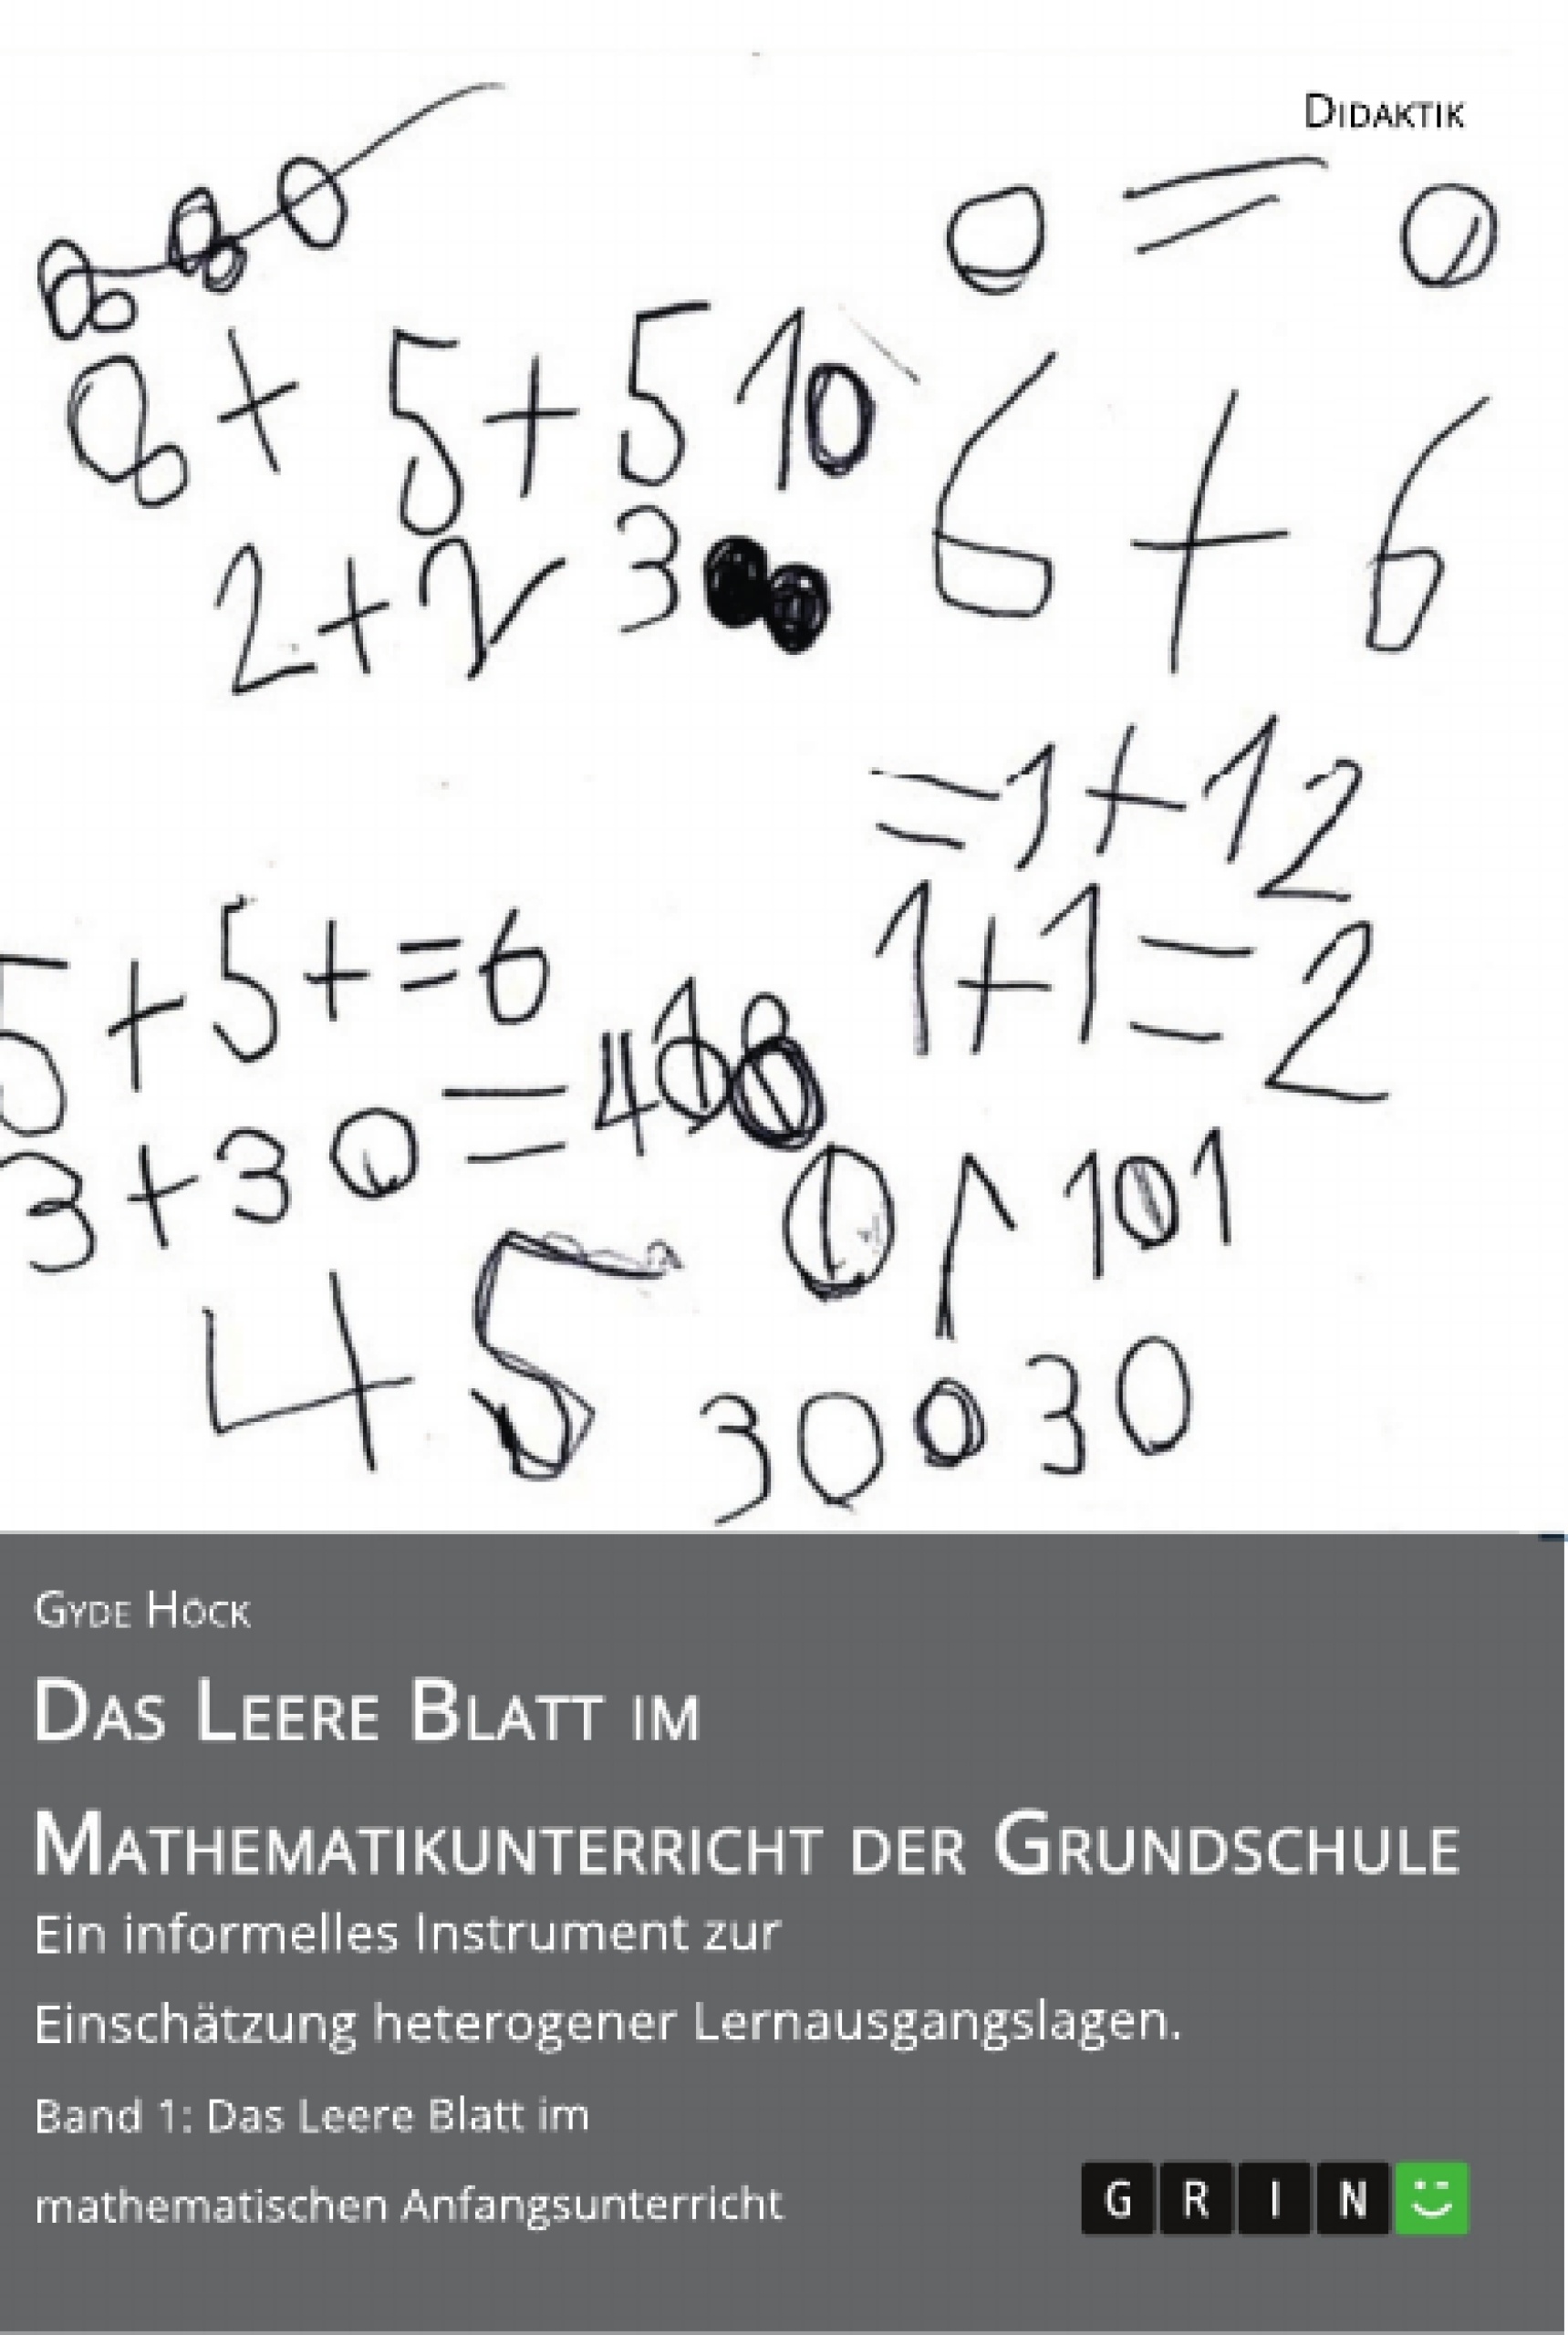 Title: Das Leere Blatt im Mathematikunterricht der Grundschule